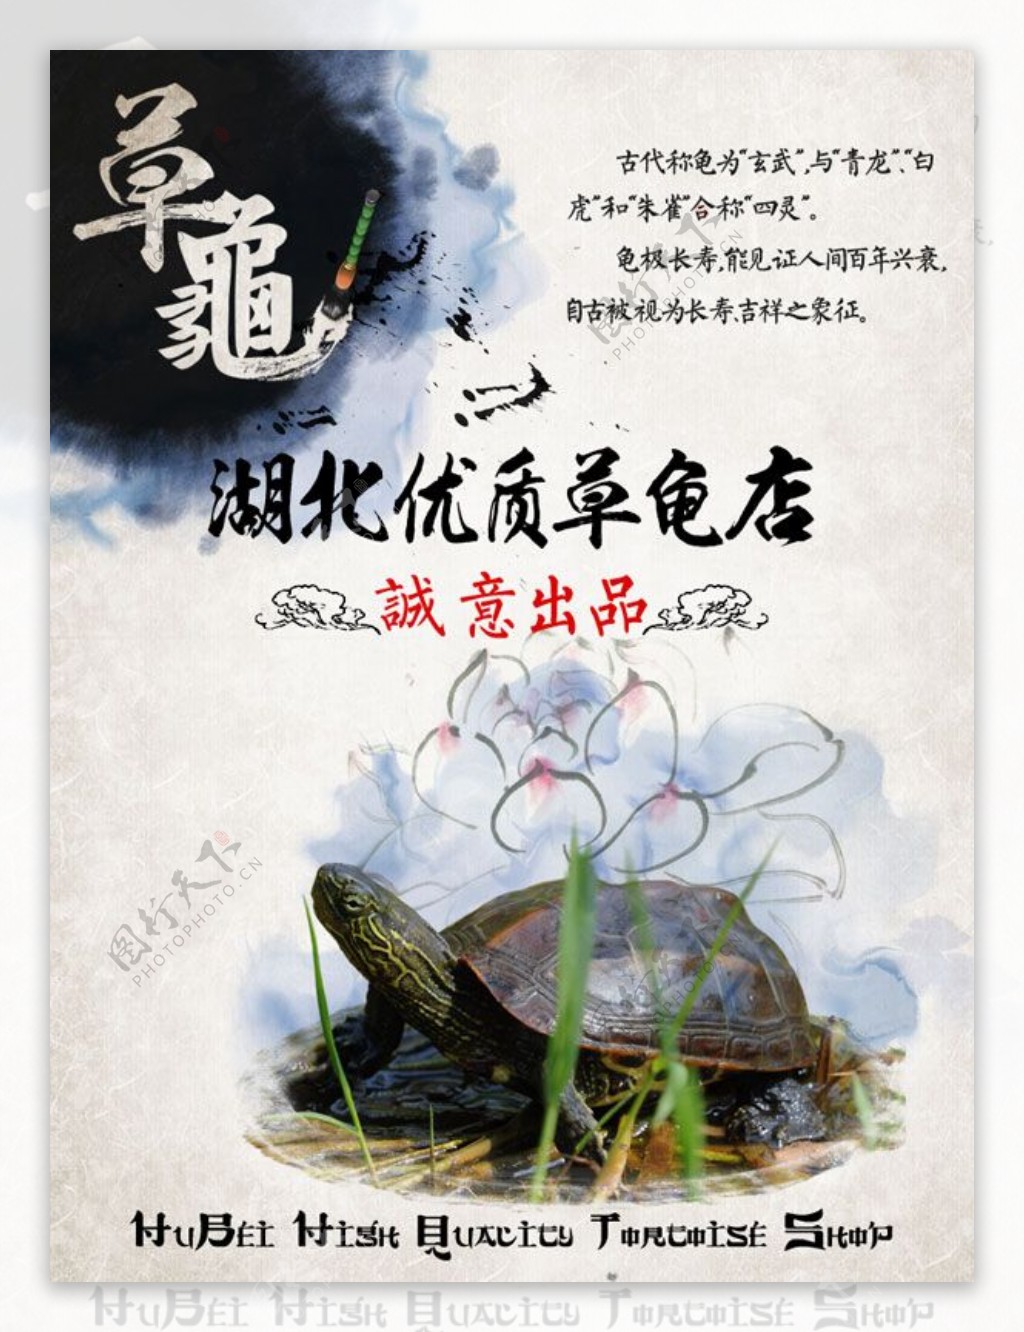 中国风草龟店广告免费